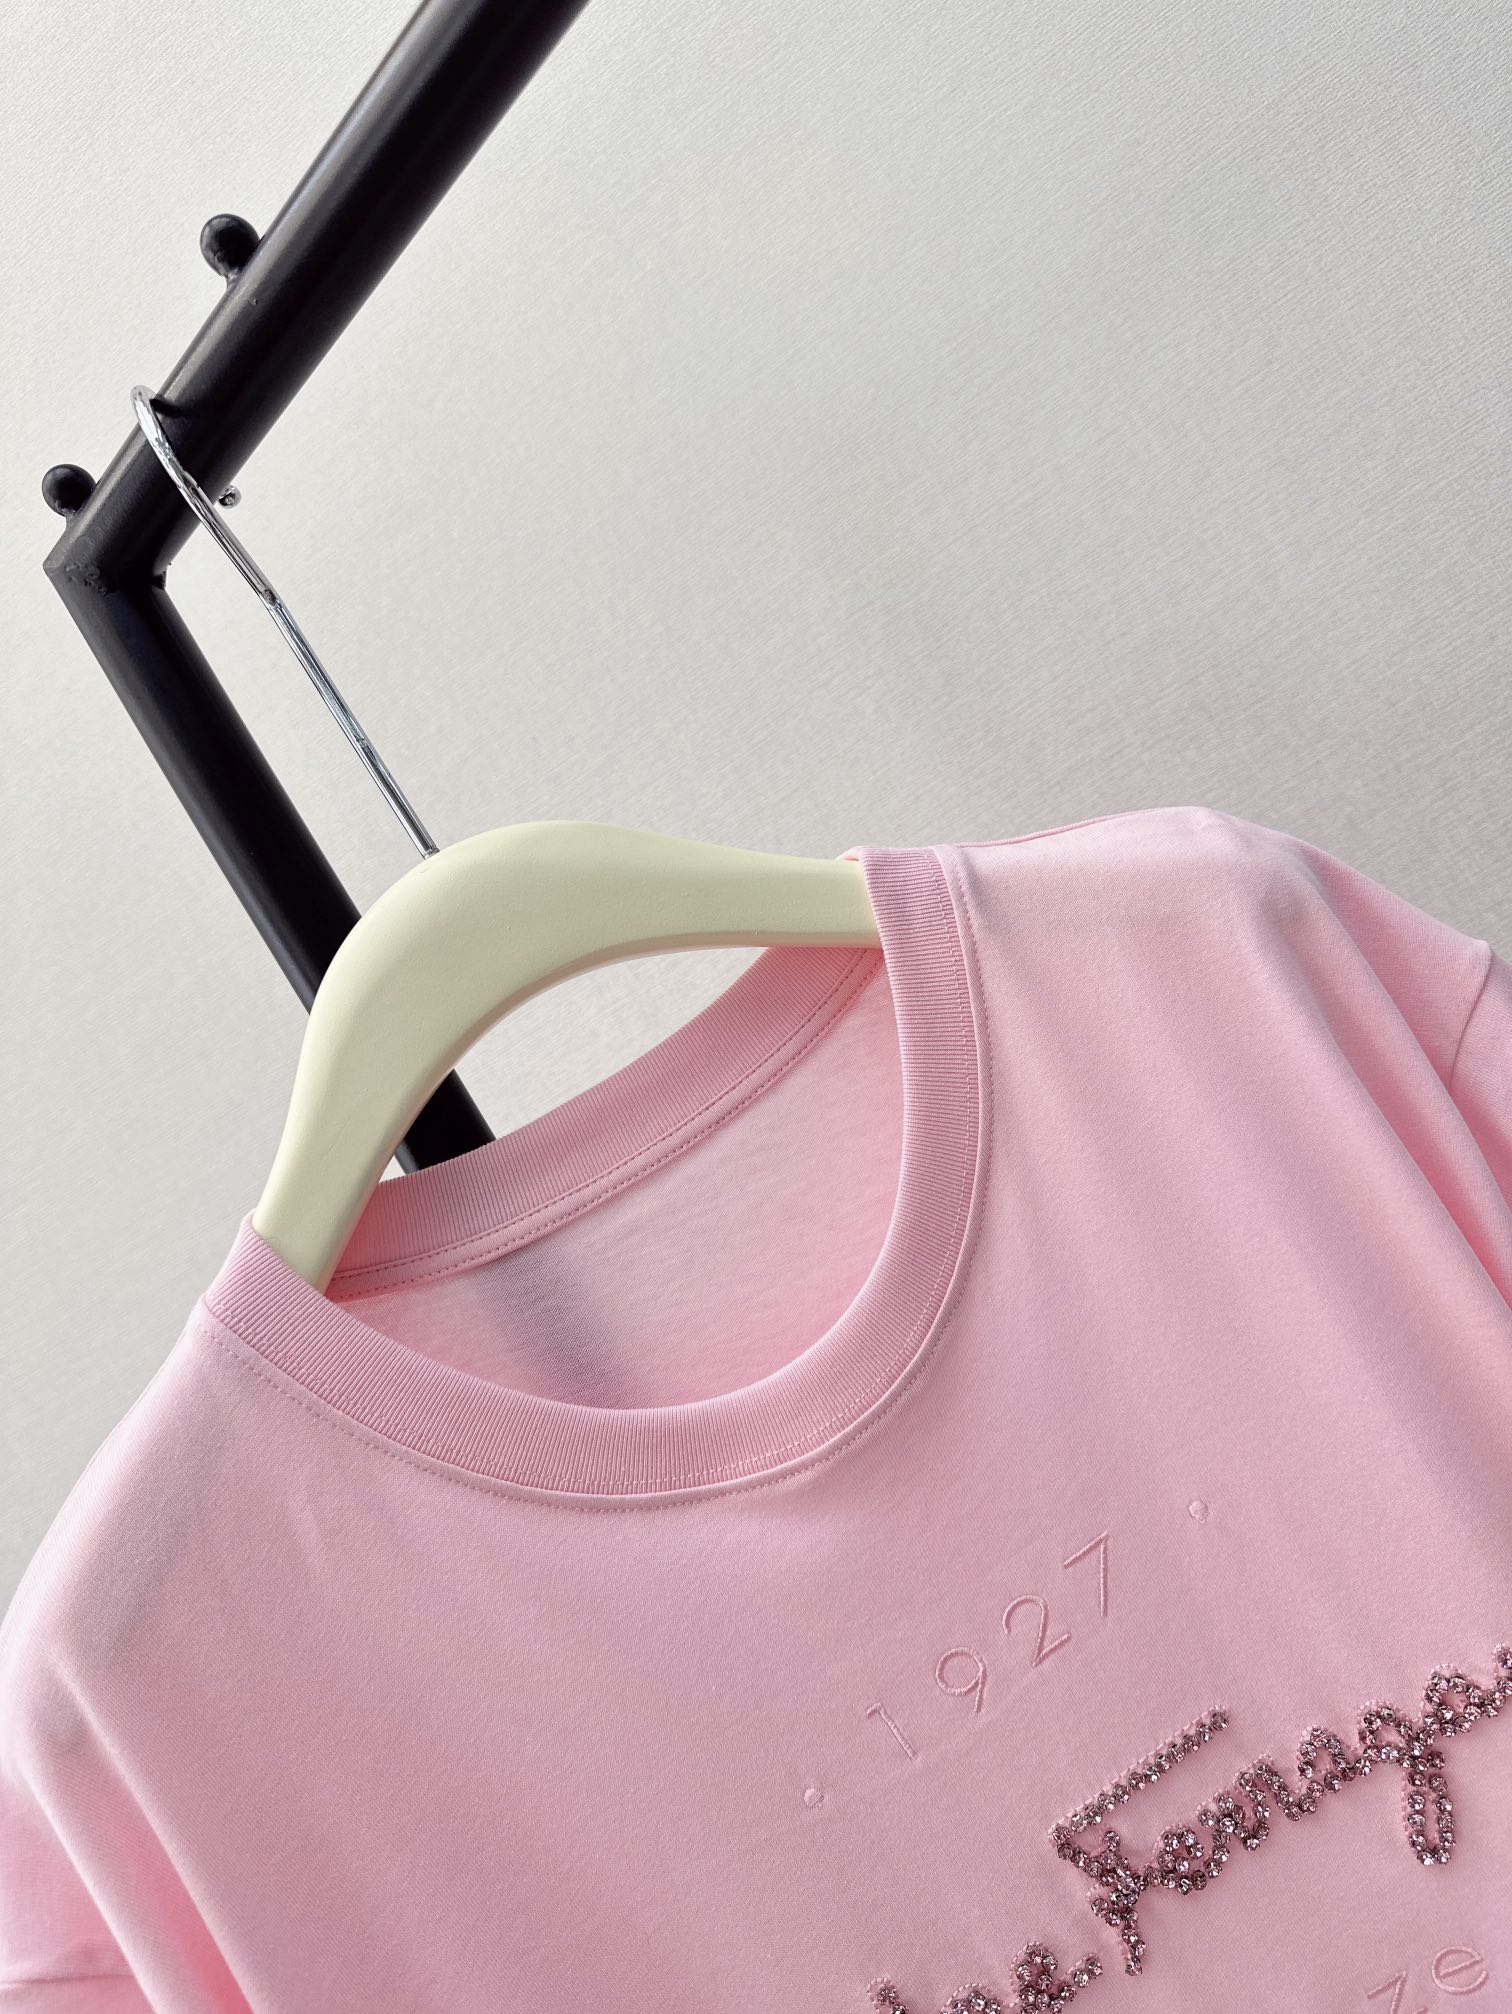 独家首发24Ss春夏最新款水钻装饰宽松休闲T恤超重工的一款刺绣品牌经典标识内填充配色水钻全手工缝制很精致